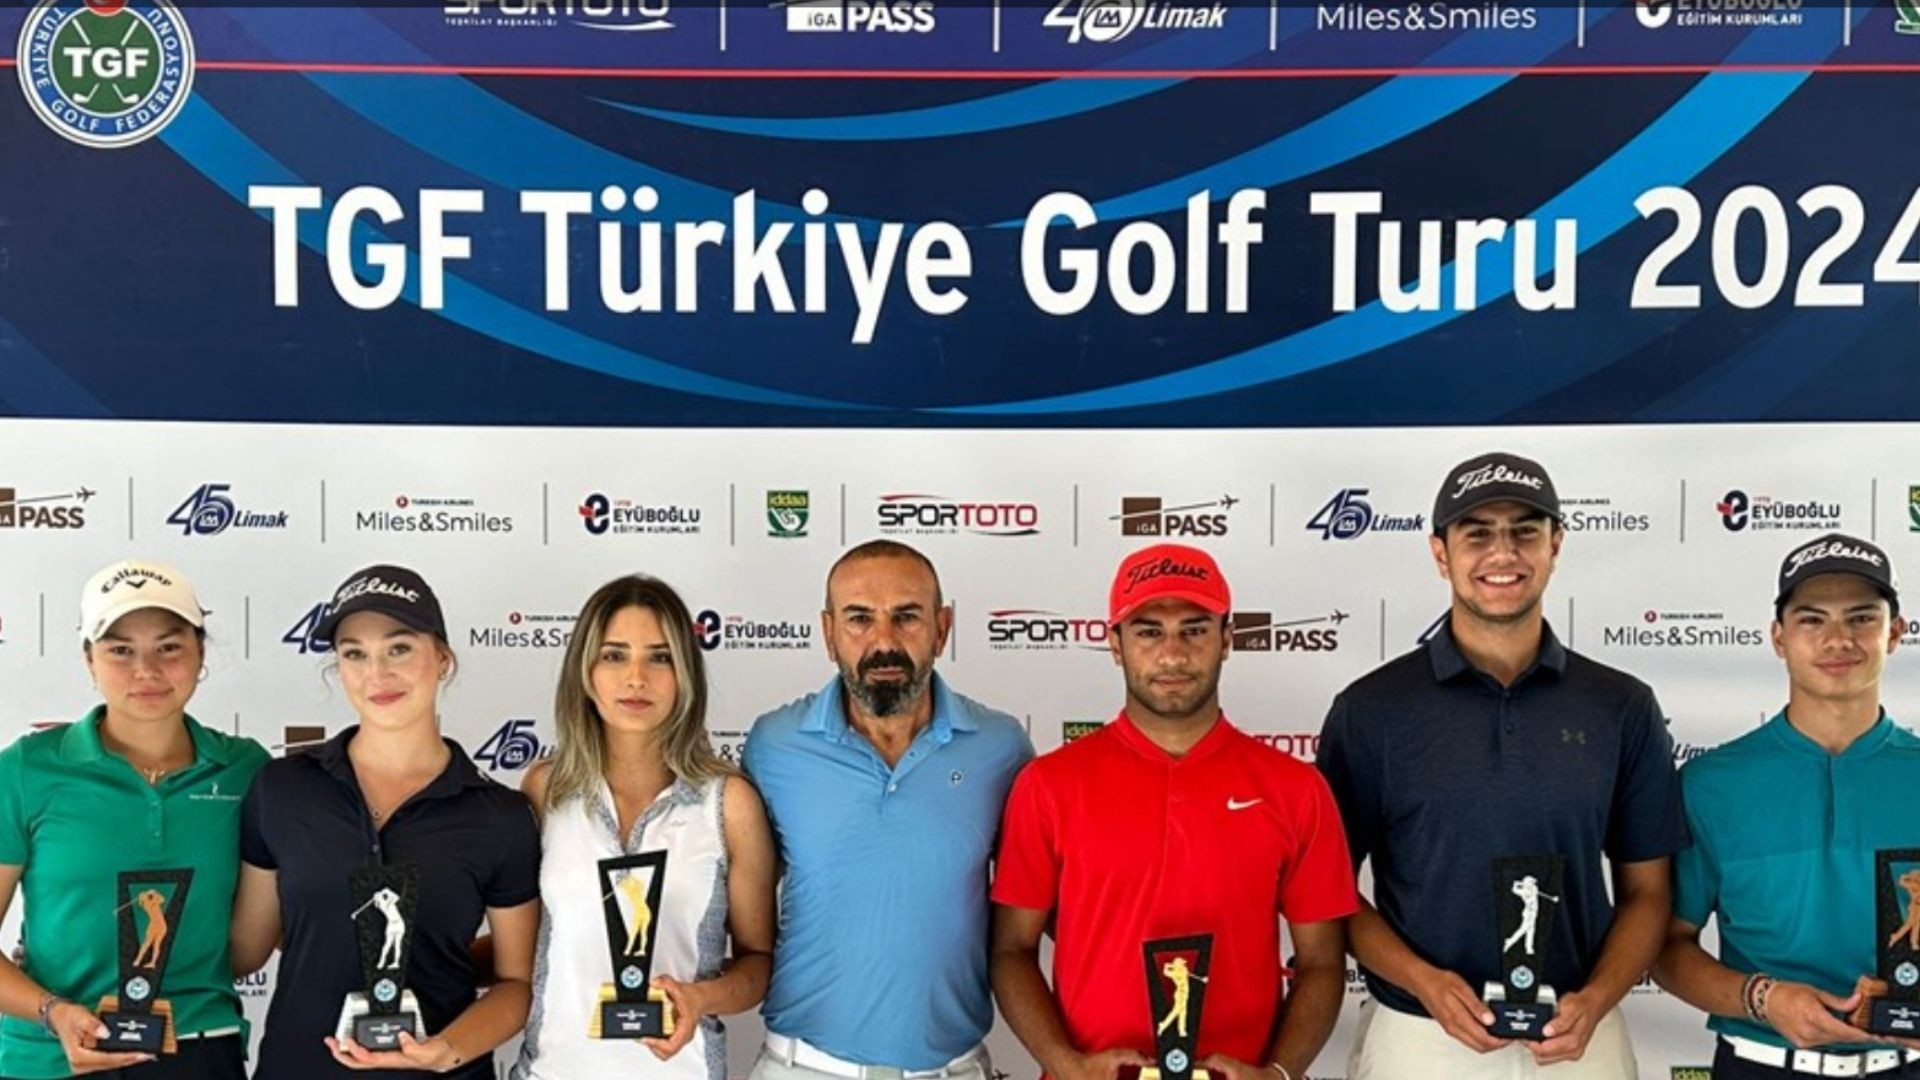 TGF Türkiye Golf Turu 2024 müsabakaları tamamlandı